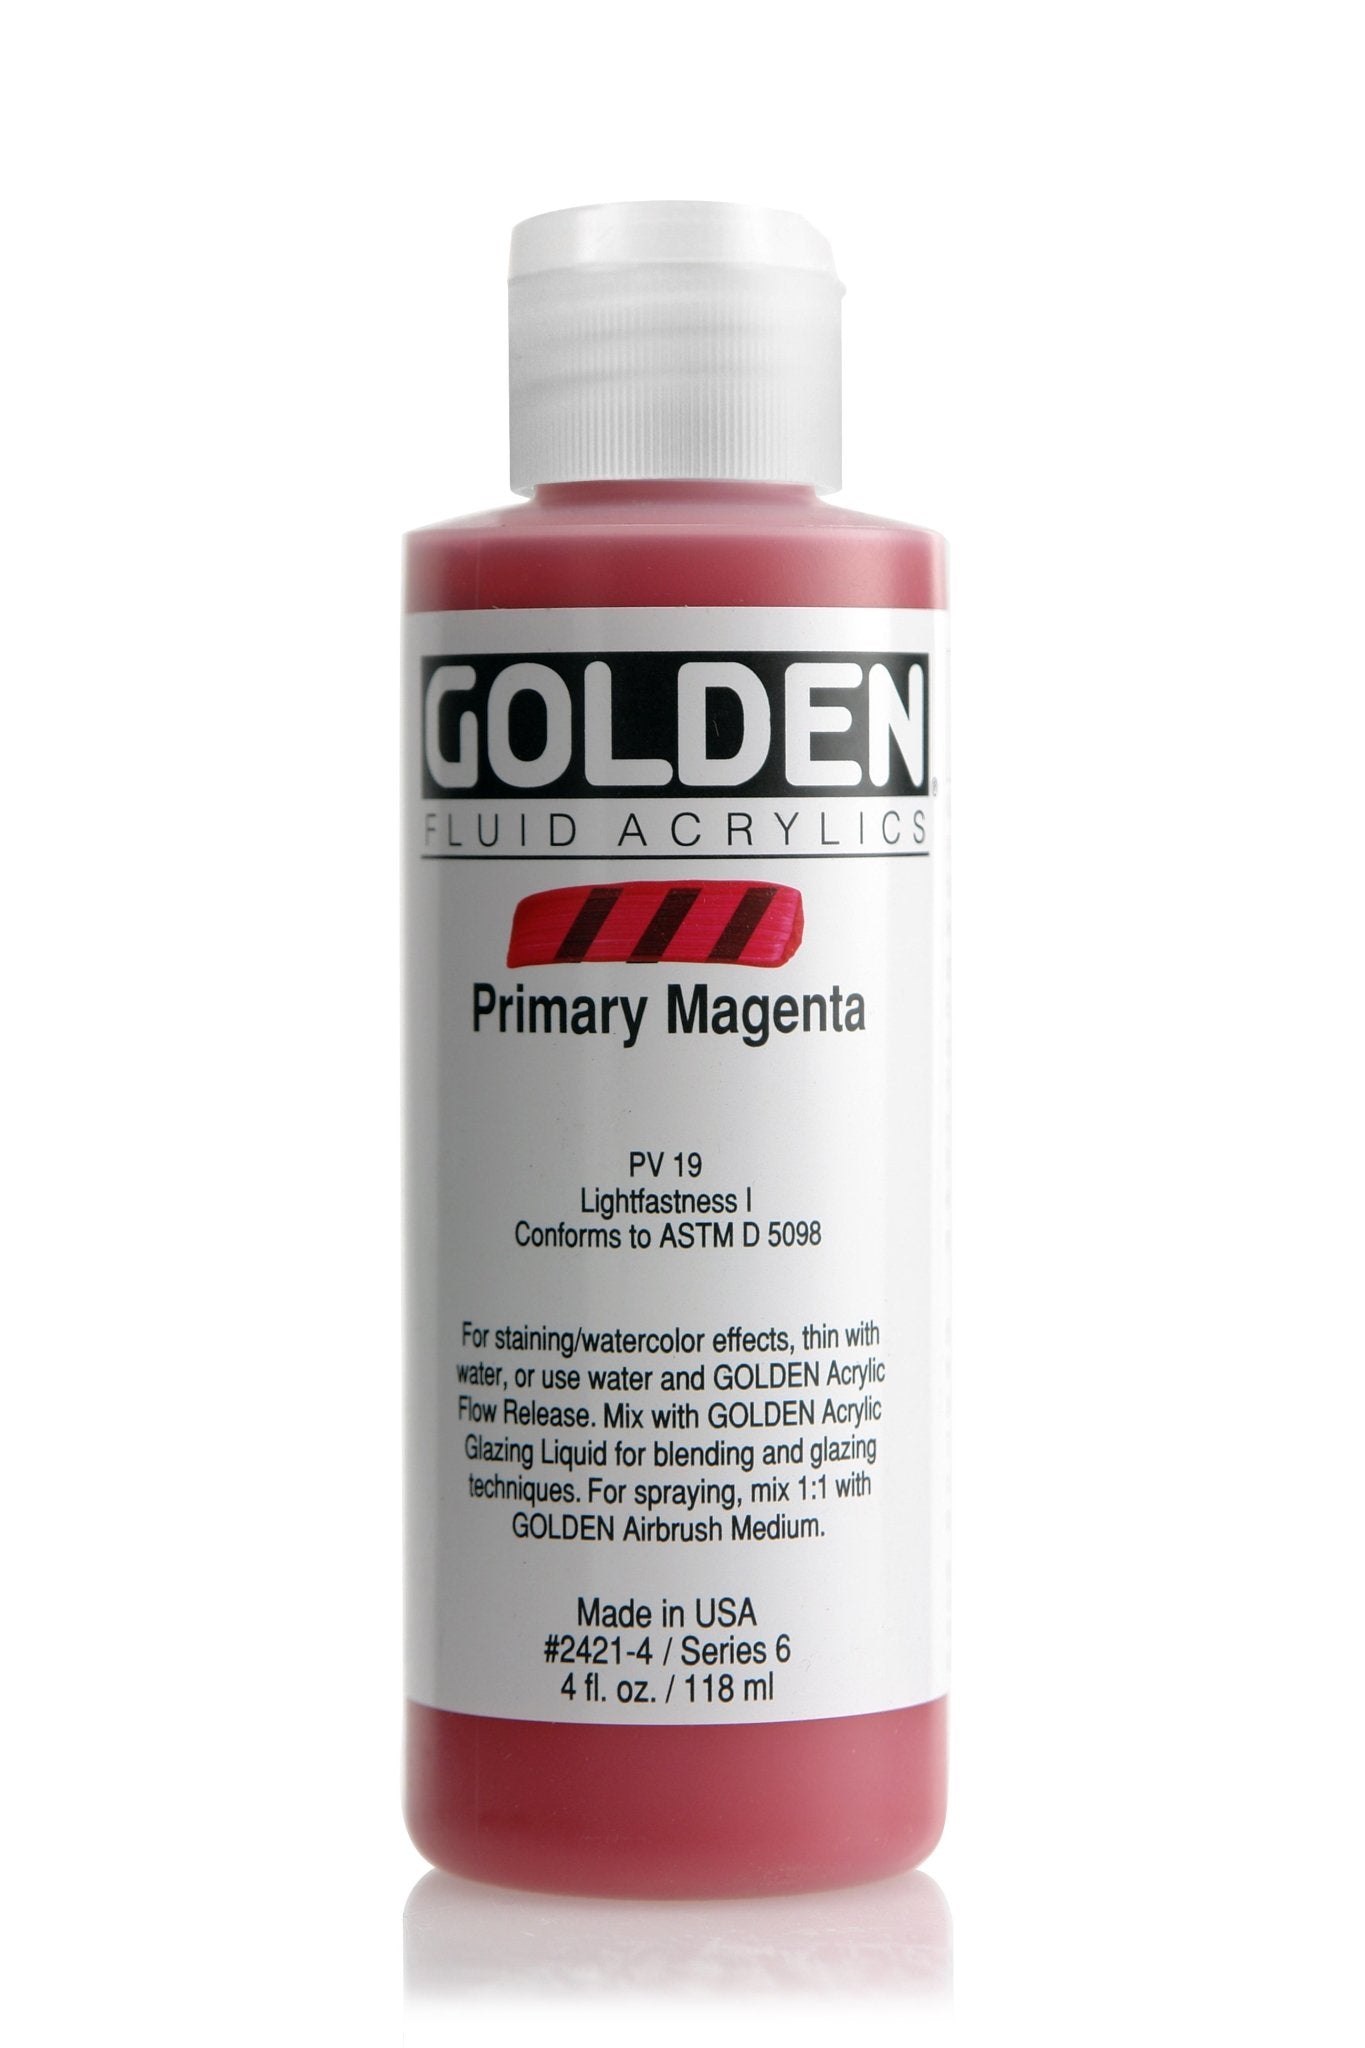 Golden Fluid Acrylic 118ml Primary Magenta - theartshop.com.au